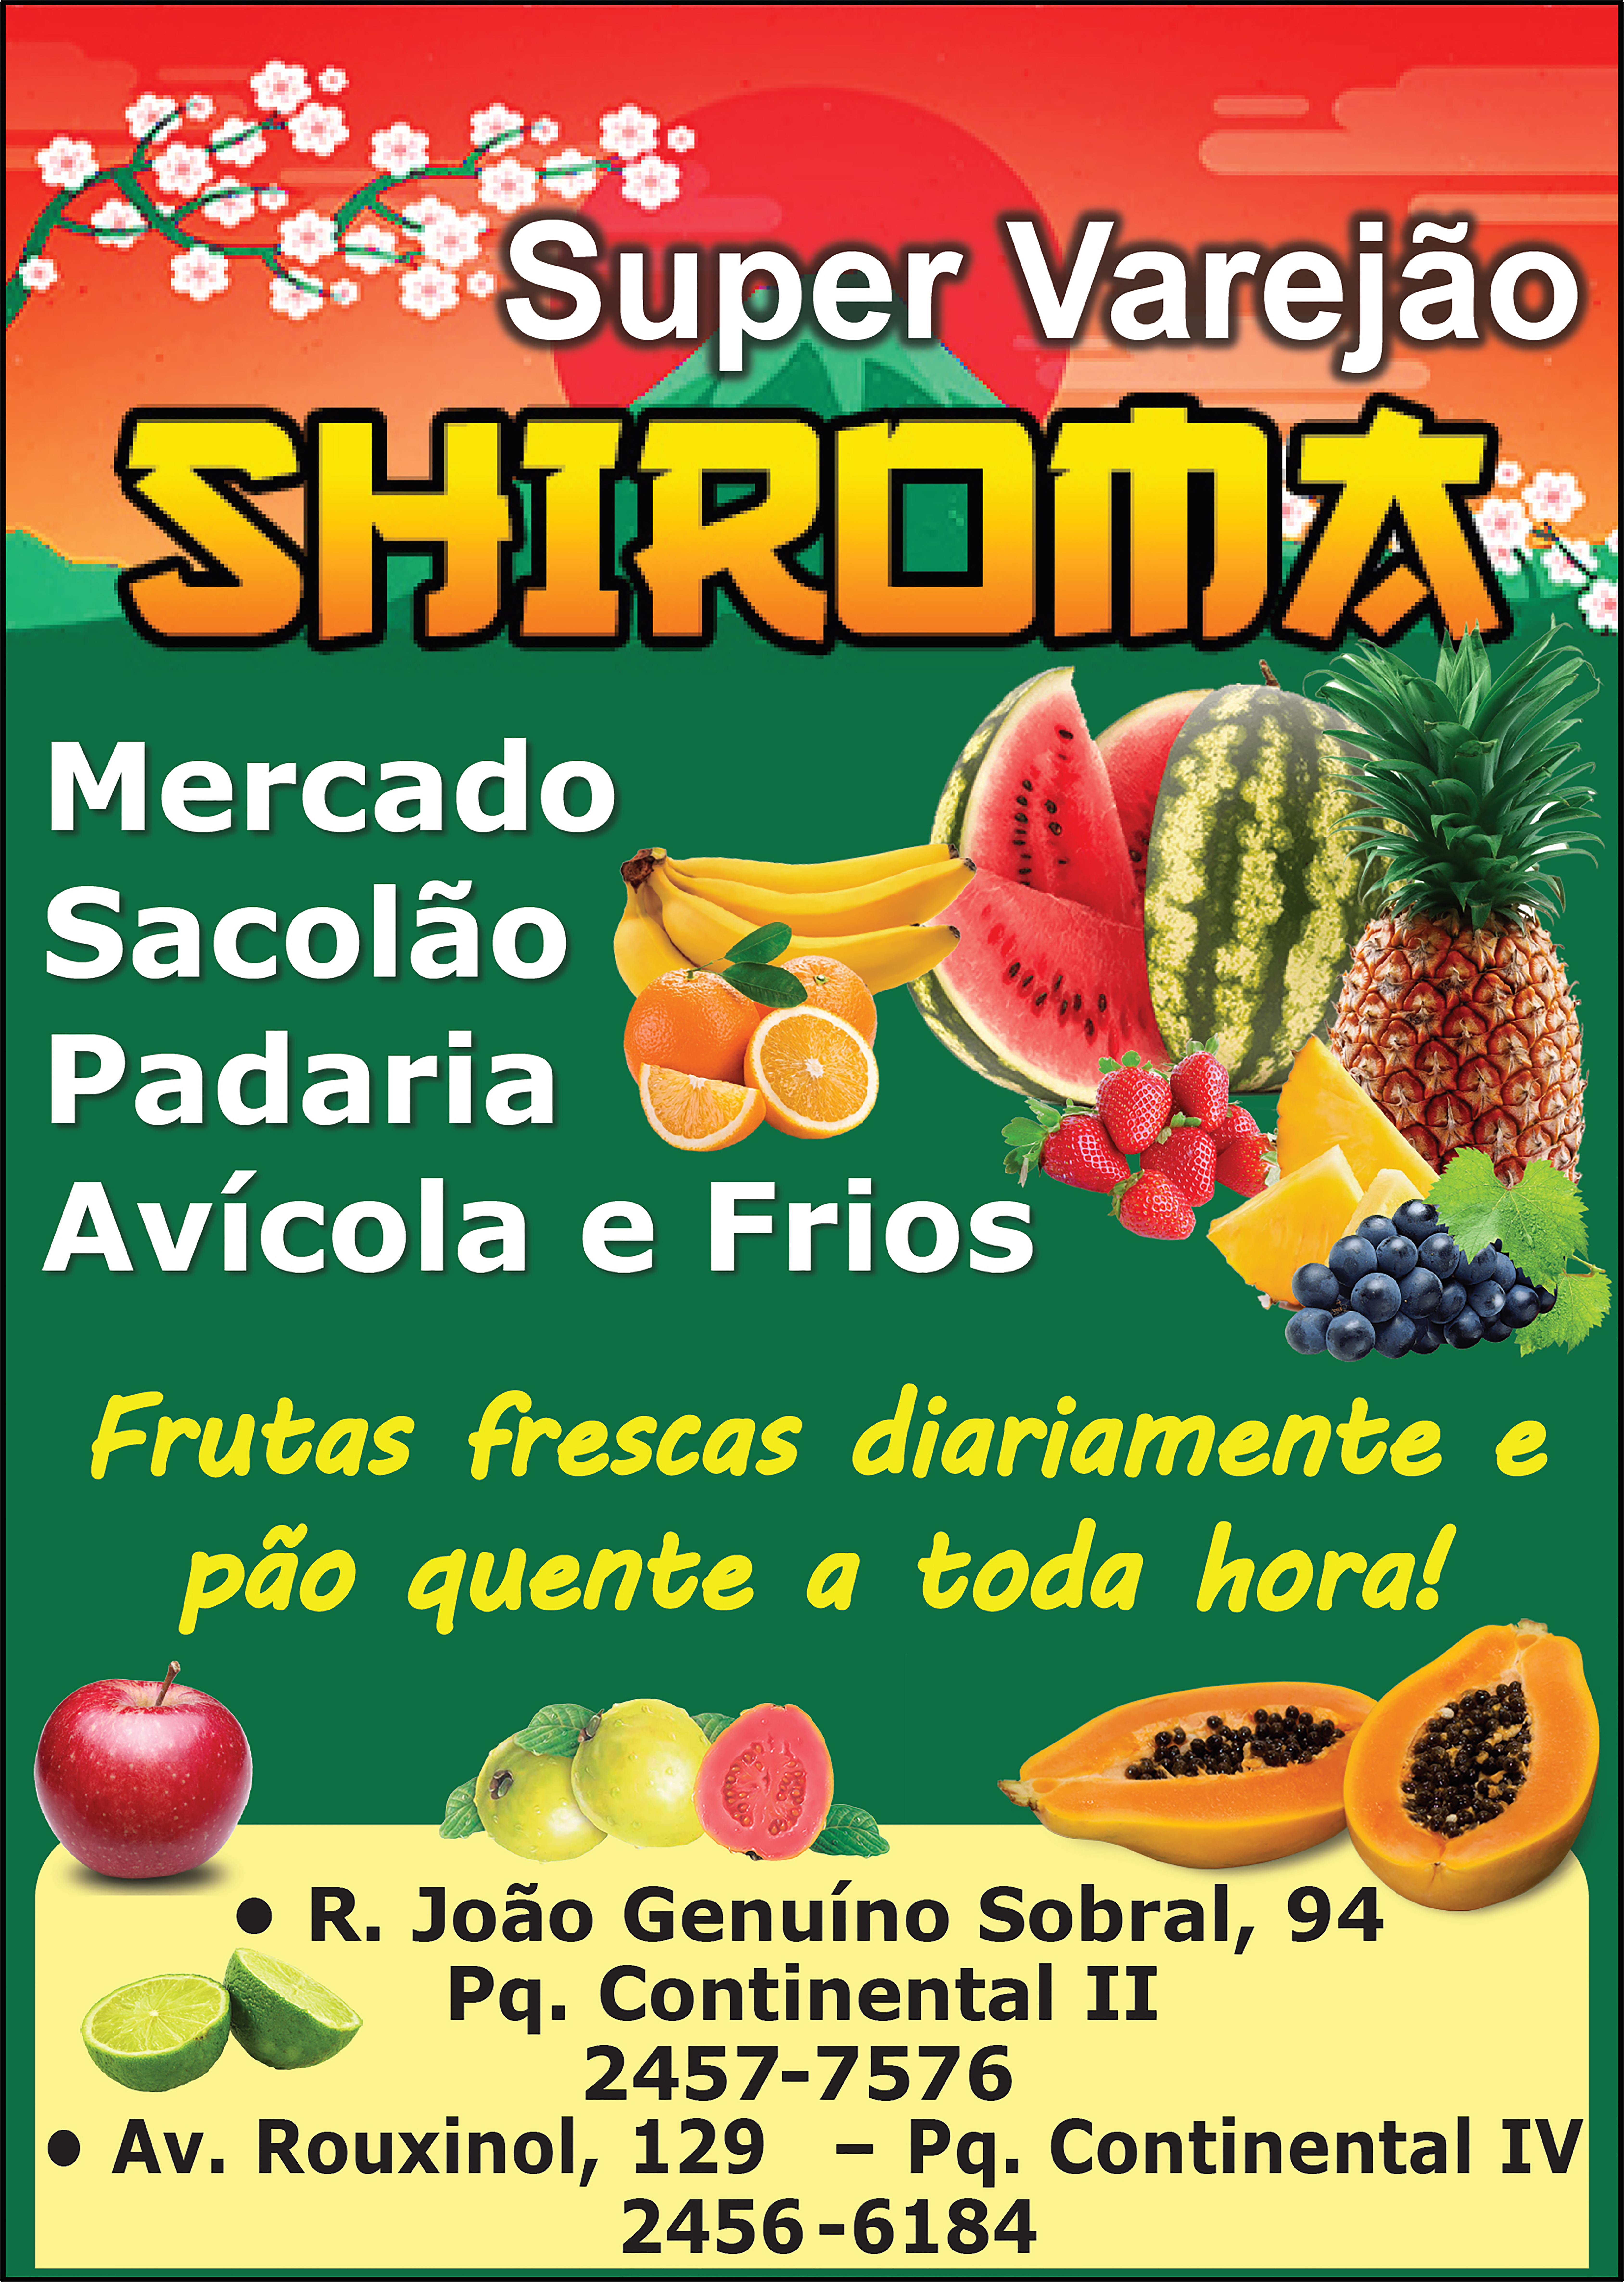 Super Varejo Shiroma - mercado, sacolo, padaria, avcola e frios - Frutas frescas diariamente e po quente a toda hora!